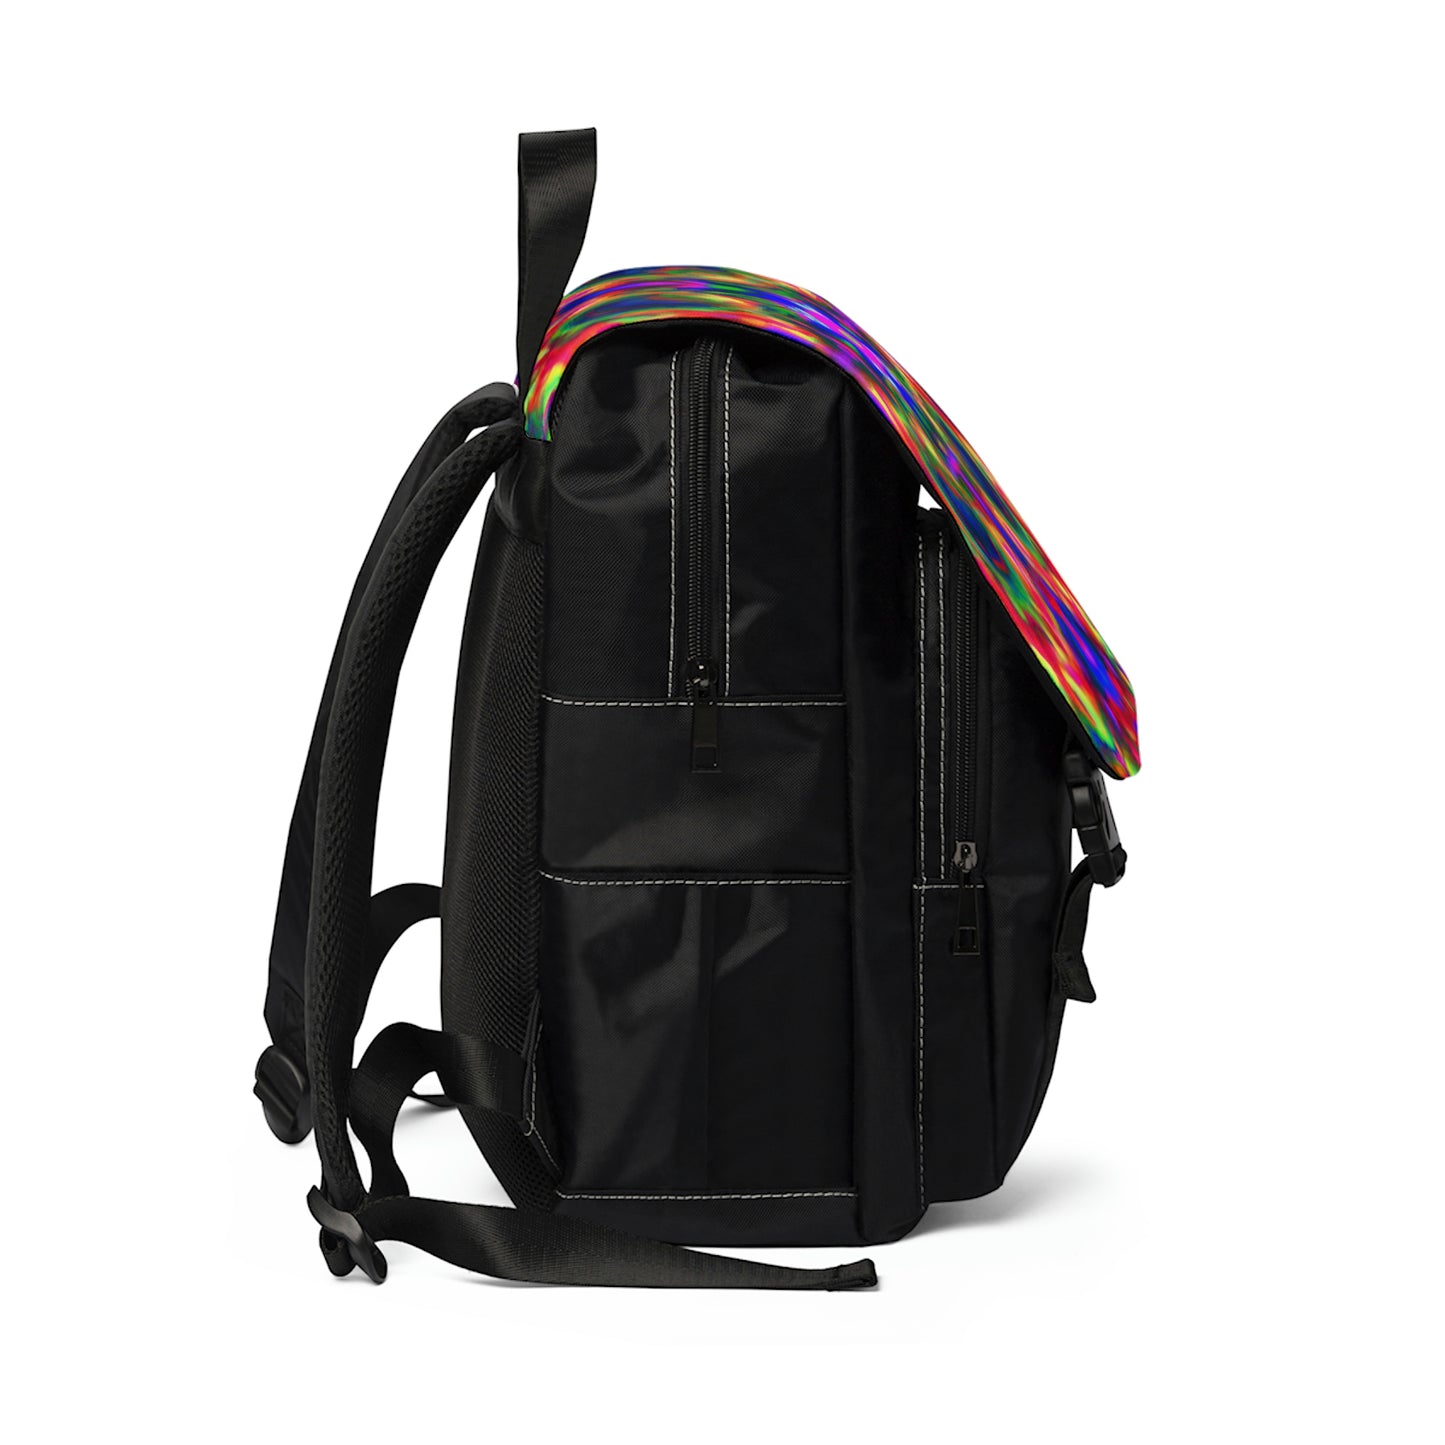 DeVoisé - Psychedelic Shoulder Travel Backpack Bag